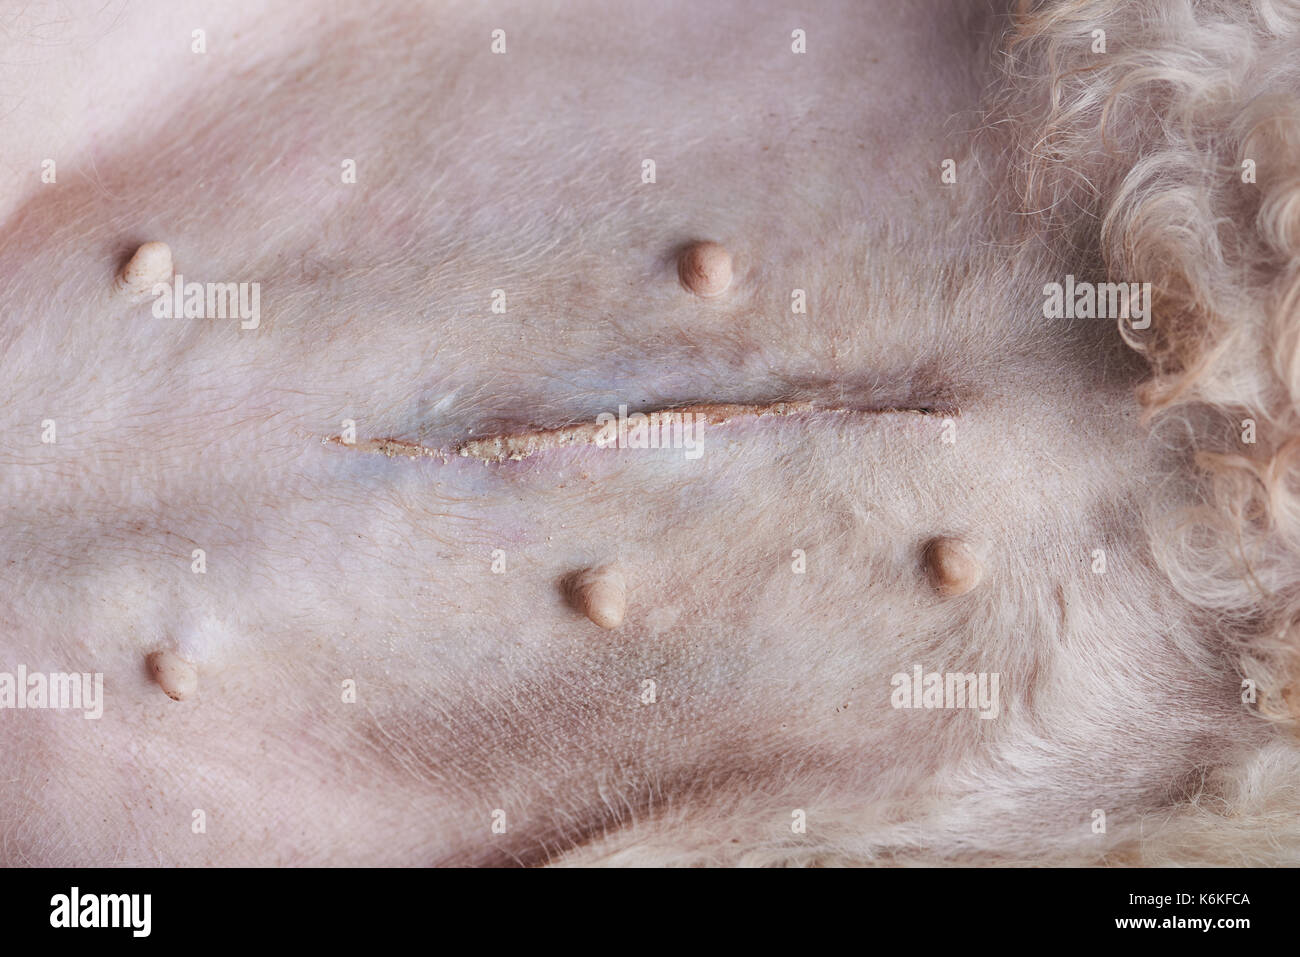 Cicatrice sulla pancia del cane di close-up. vet tema chirurgia Foto Stock